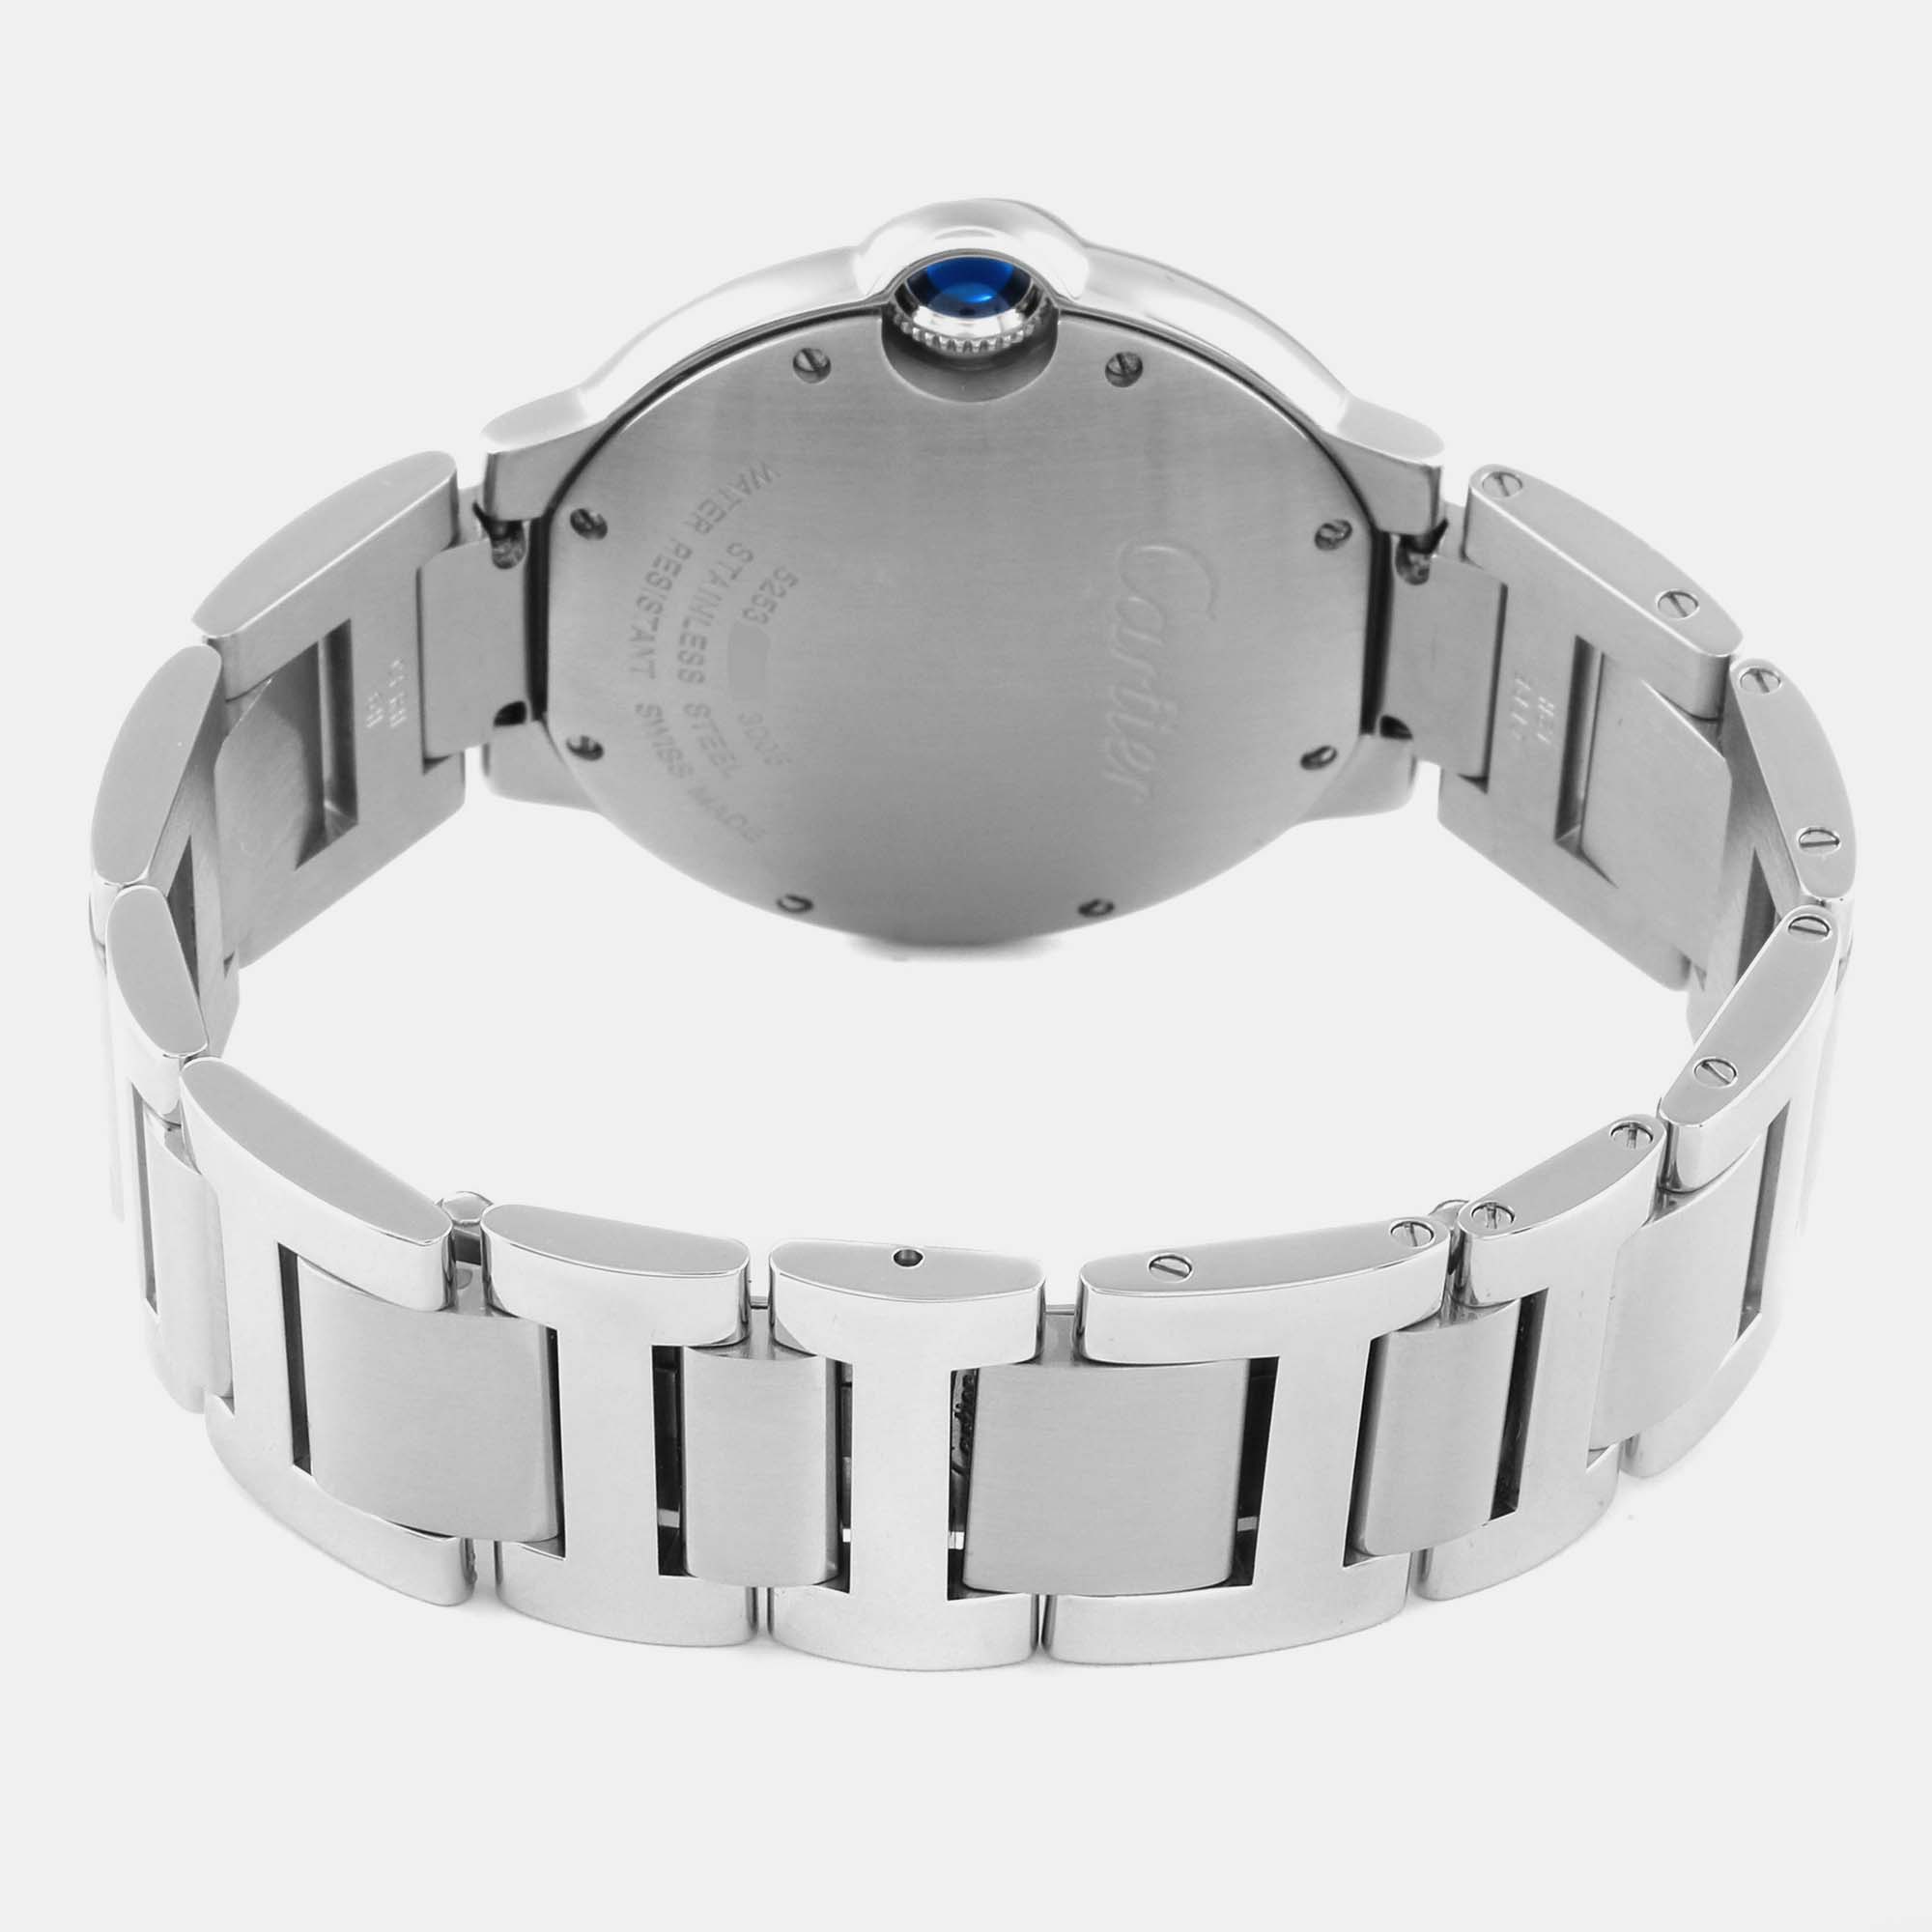 Cartier Ballon Bleu 36mm Silver Guilloche Dial Steel Men's Watch W69011Z4 36 Mm